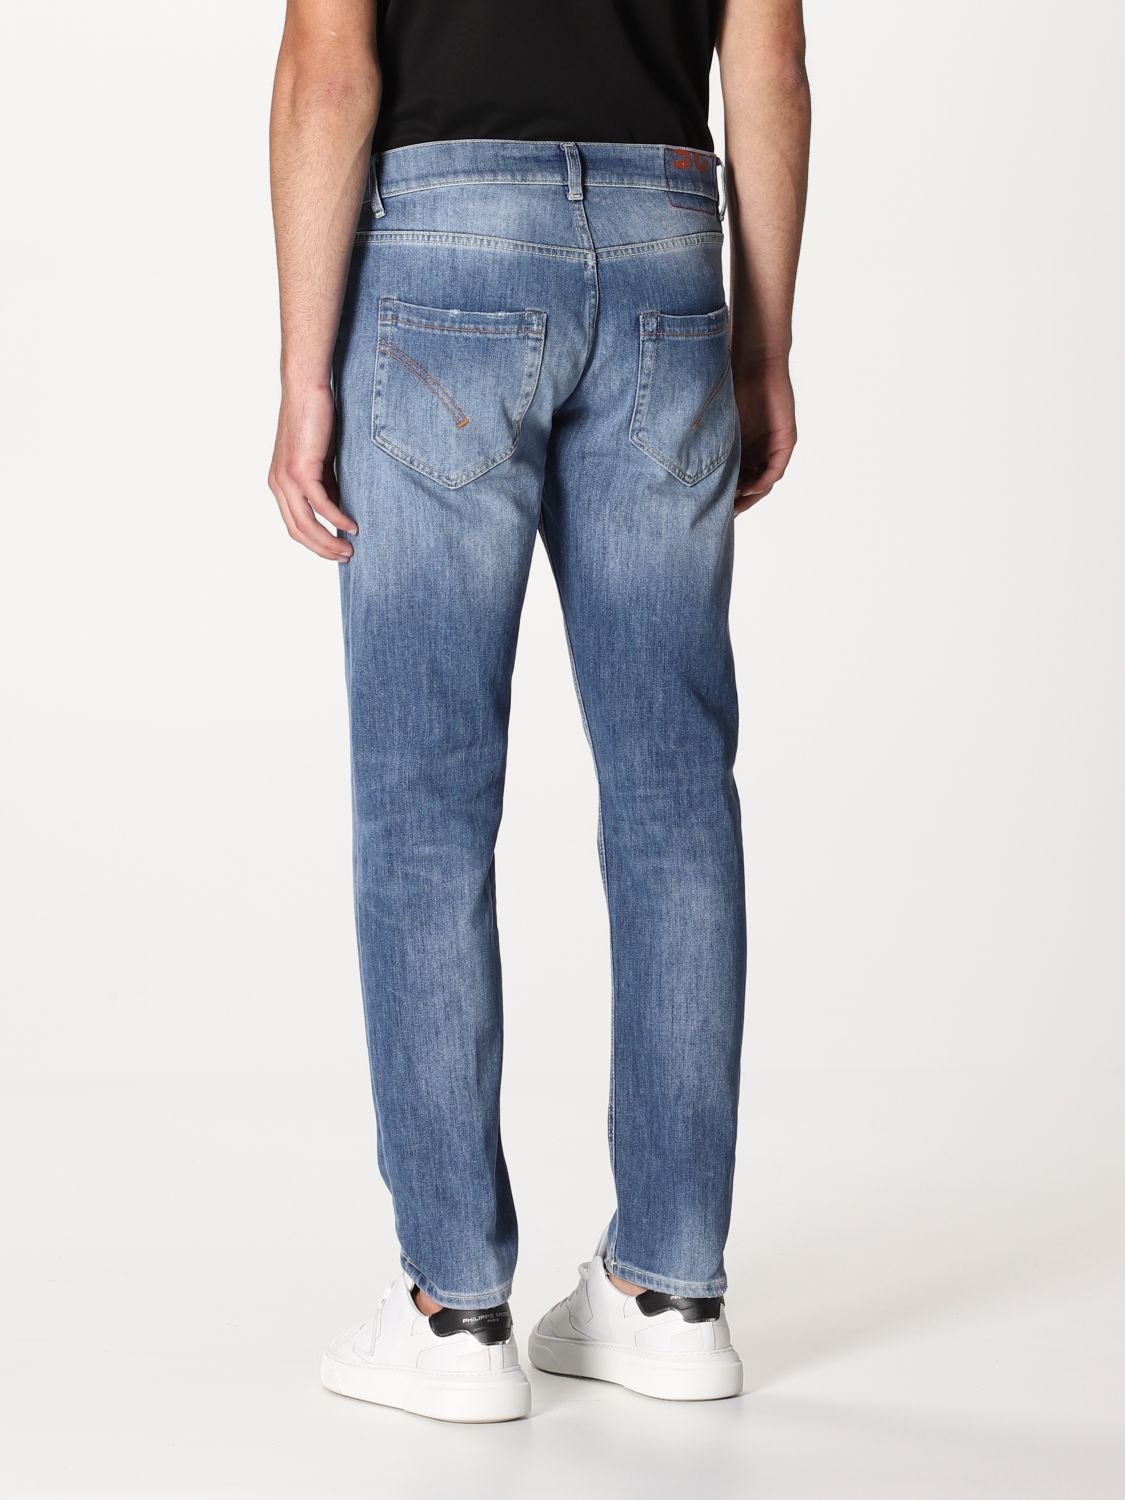 DONDUP: 5-pocket jeans - Denim | Dondup jeans UP168DS0107AY5 online on ...